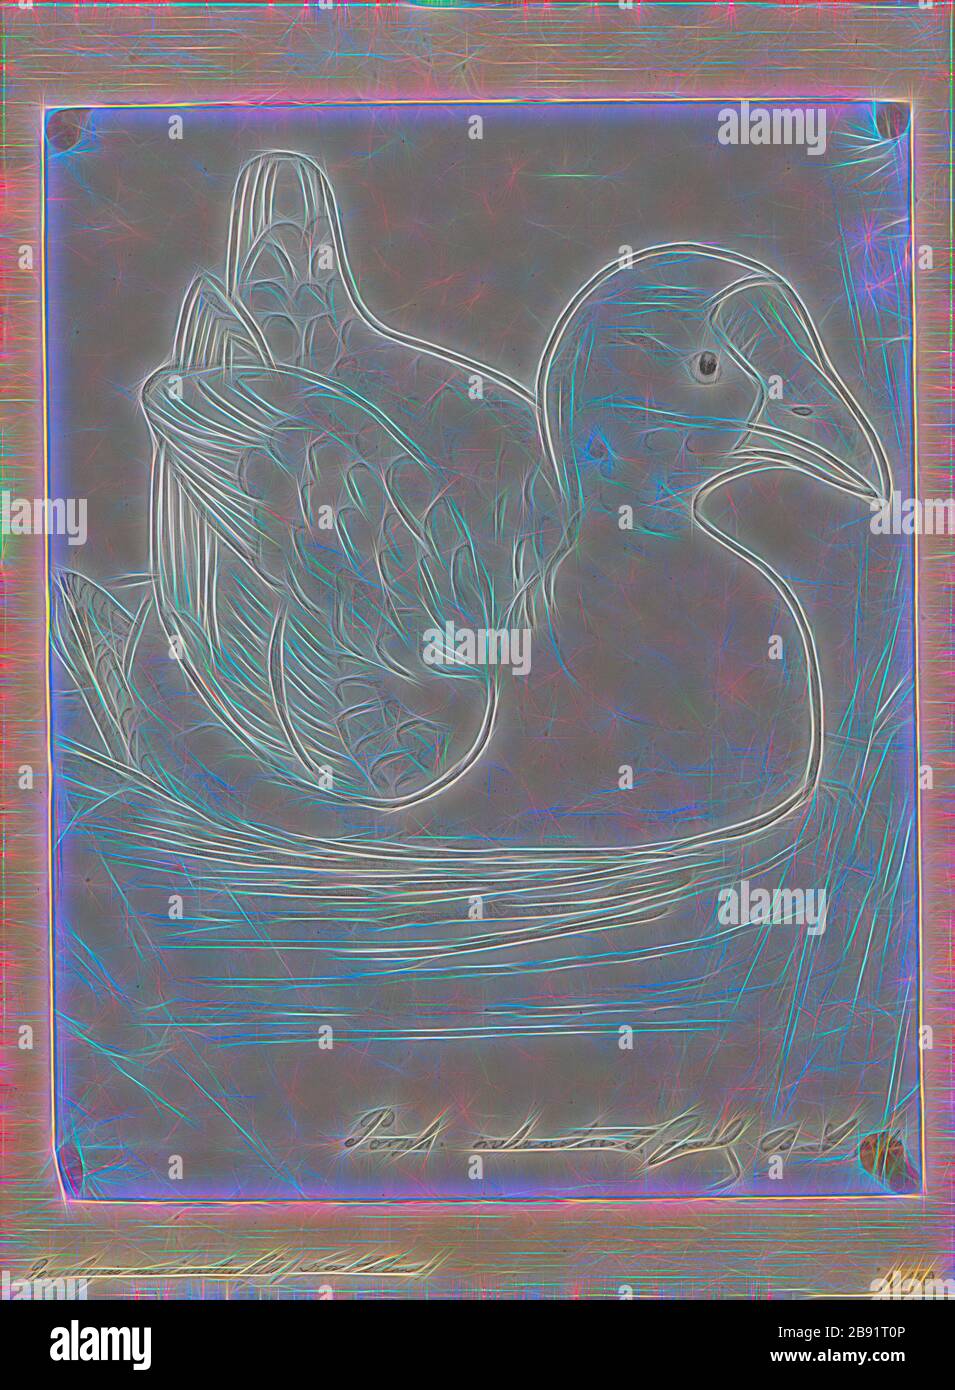 Porphyrio melanotus, Print, il canfano australasiano (Porphyrio melanotus) è una specie di anfano (Porphyrio) che si trova nell'Indonesia orientale (Molucche, Aru e Kai Islands), Papua Nuova Guinea, Australia e Nuova Zelanda. In Nuova Zelanda, è conosciuto come il pukeko (dal Māori pūkeko). La specie era considerata una sottospecie di Swanfen viola., 1850-1883, Reimagined by Gibon, disegno di calore allegro di luminosità e raggi di luce radianza. Arte classica reinventata con un tocco moderno. Fotografia ispirata al futurismo, che abbraccia l'energia dinamica della tecnologia moderna, i movemen Foto Stock